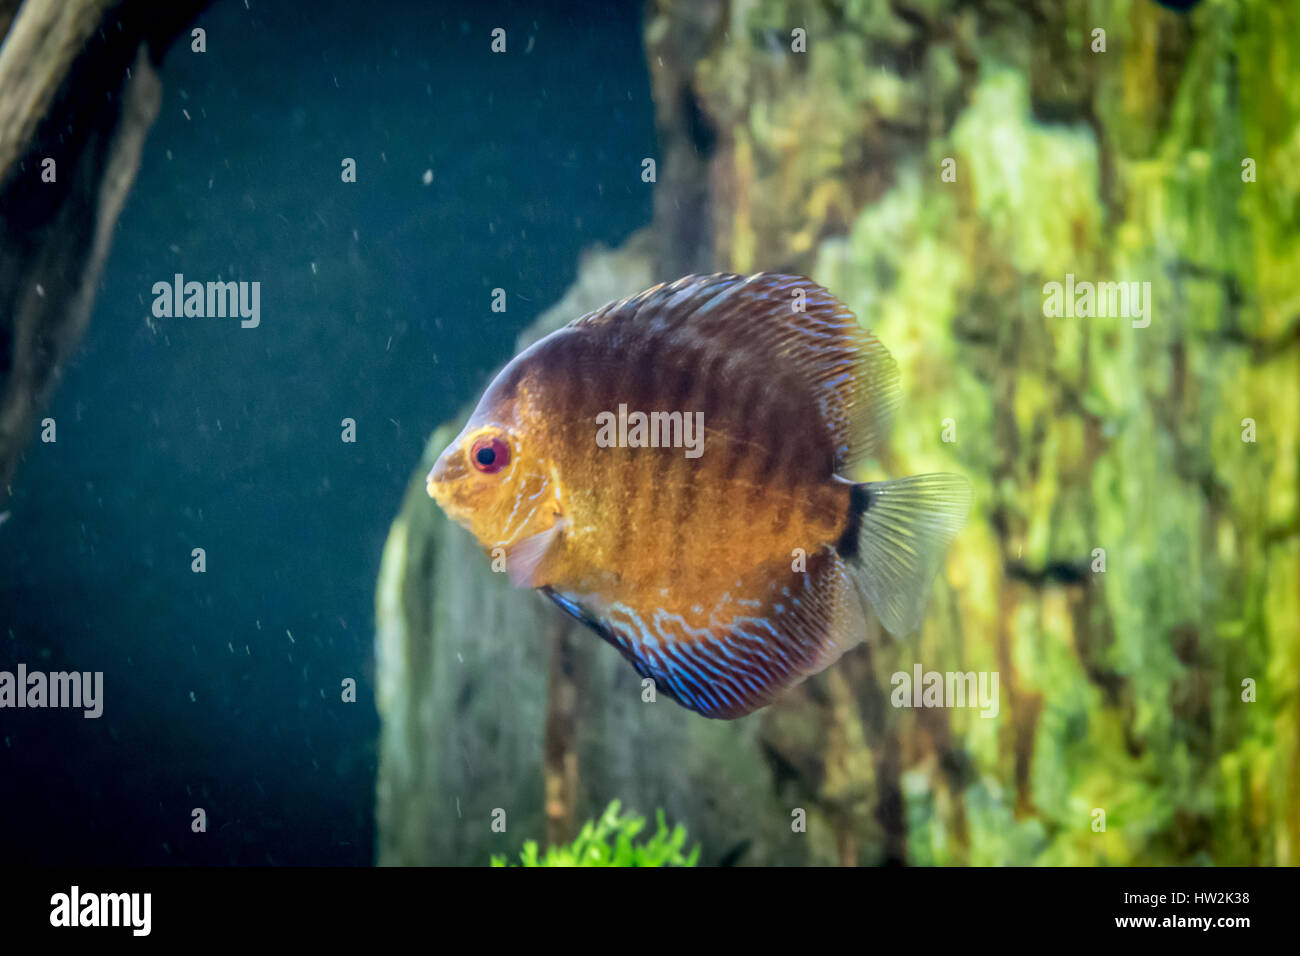 Orange and blue discus fish (Symphysodon aequifasciatus) Stock Photo